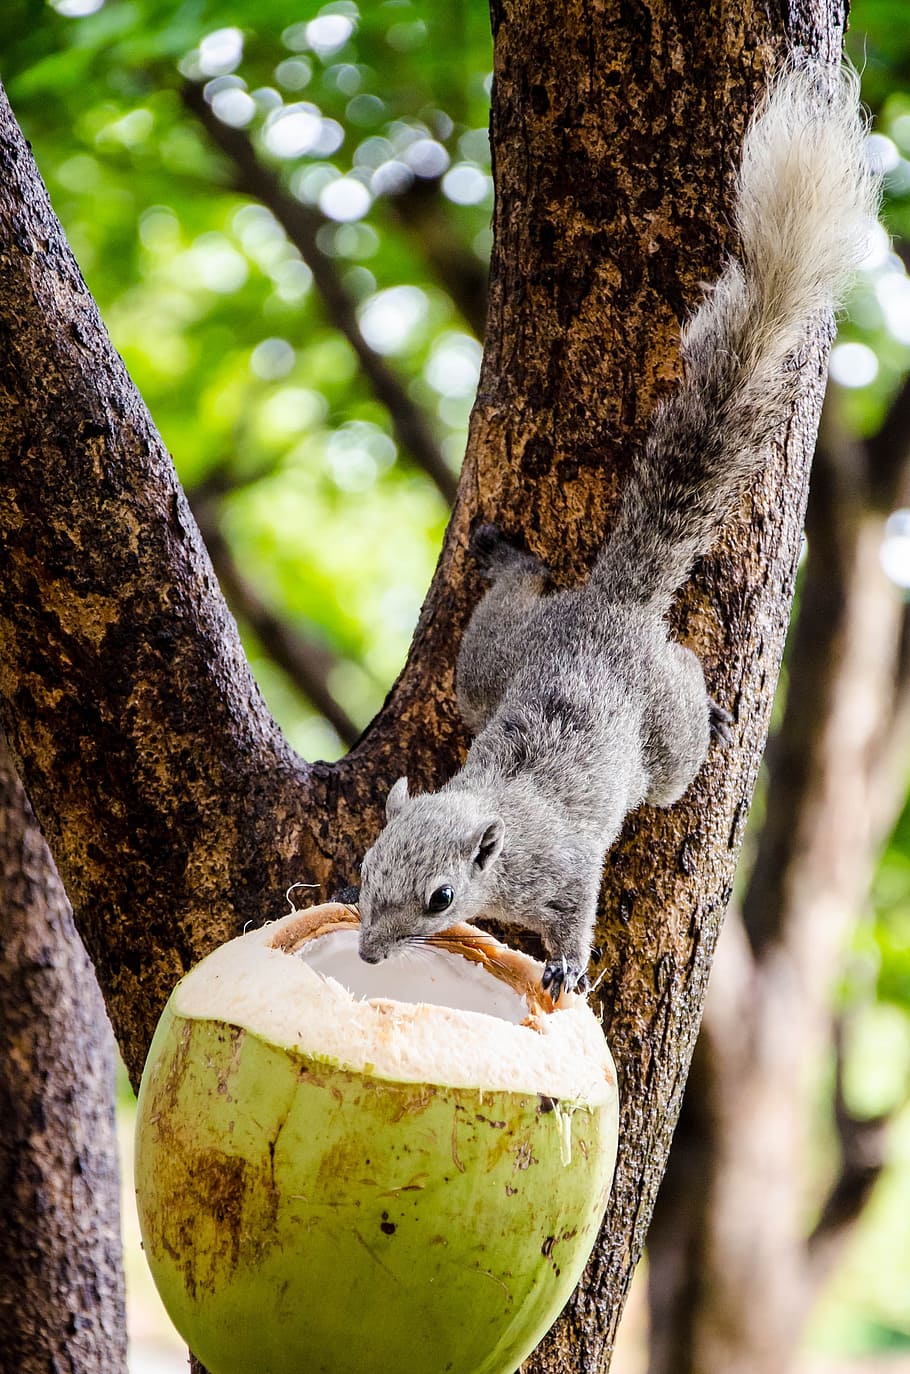 Feeding squirrel with coconut, animal, wildlife, cute, mammal